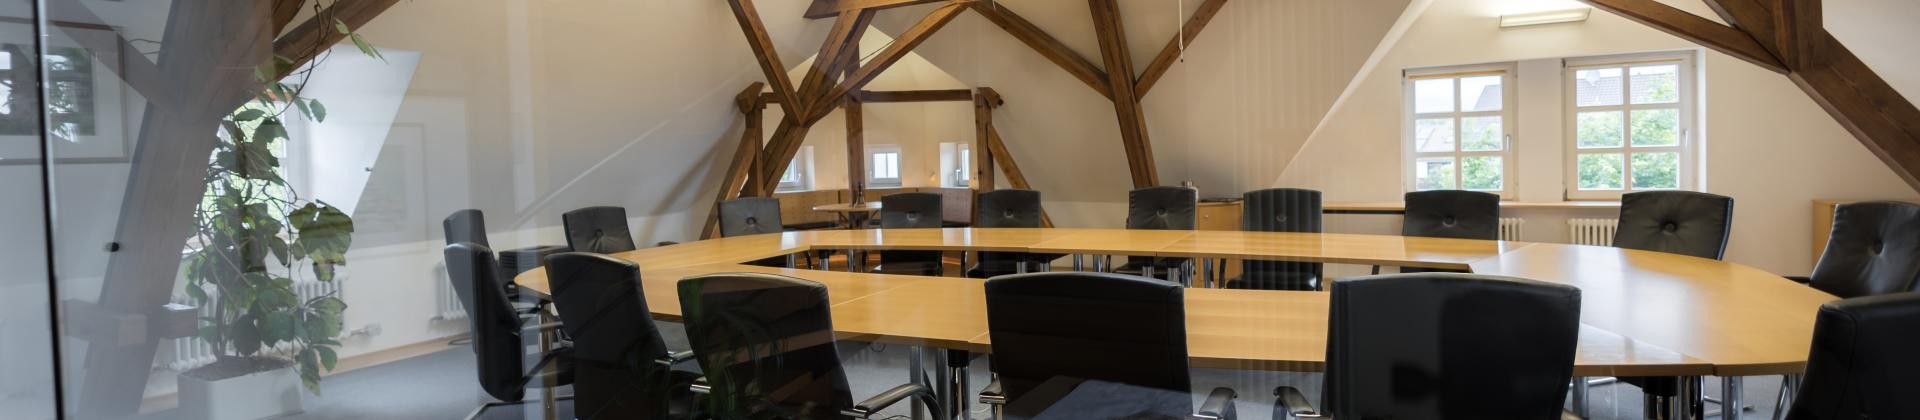 Sitzungssaal (Bürgersaal) der Gemeinde Dauchingen. Schwarze Schwingstühle an einem Konferenztisch aus Holz umgeben von Holzbalken.